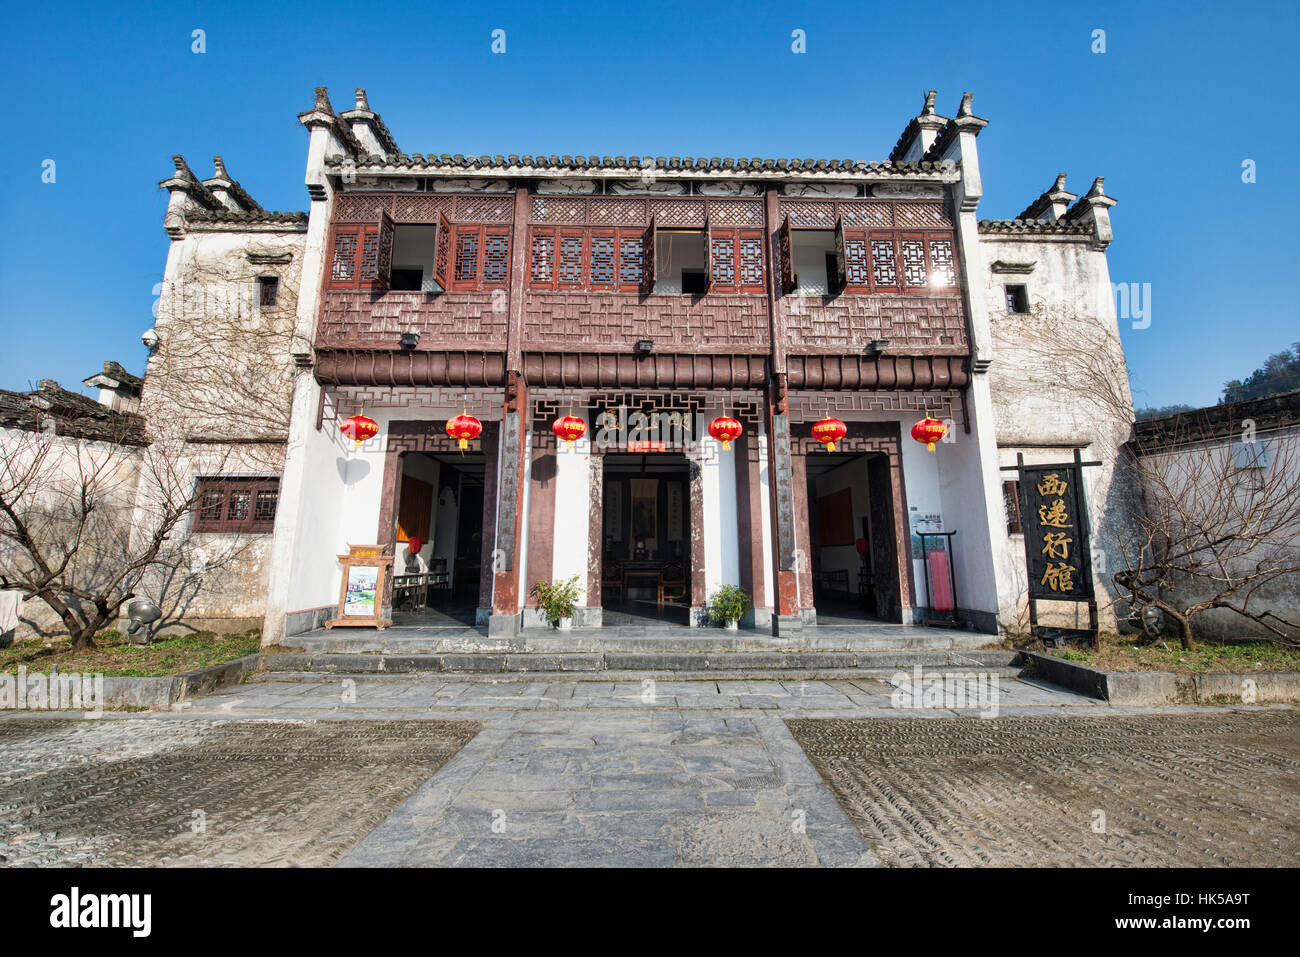 Un clan restauré à une boutique guesthouse dans le patrimoine mondial de l'ancien village de Xidi, Anhui, Chine Banque D'Images